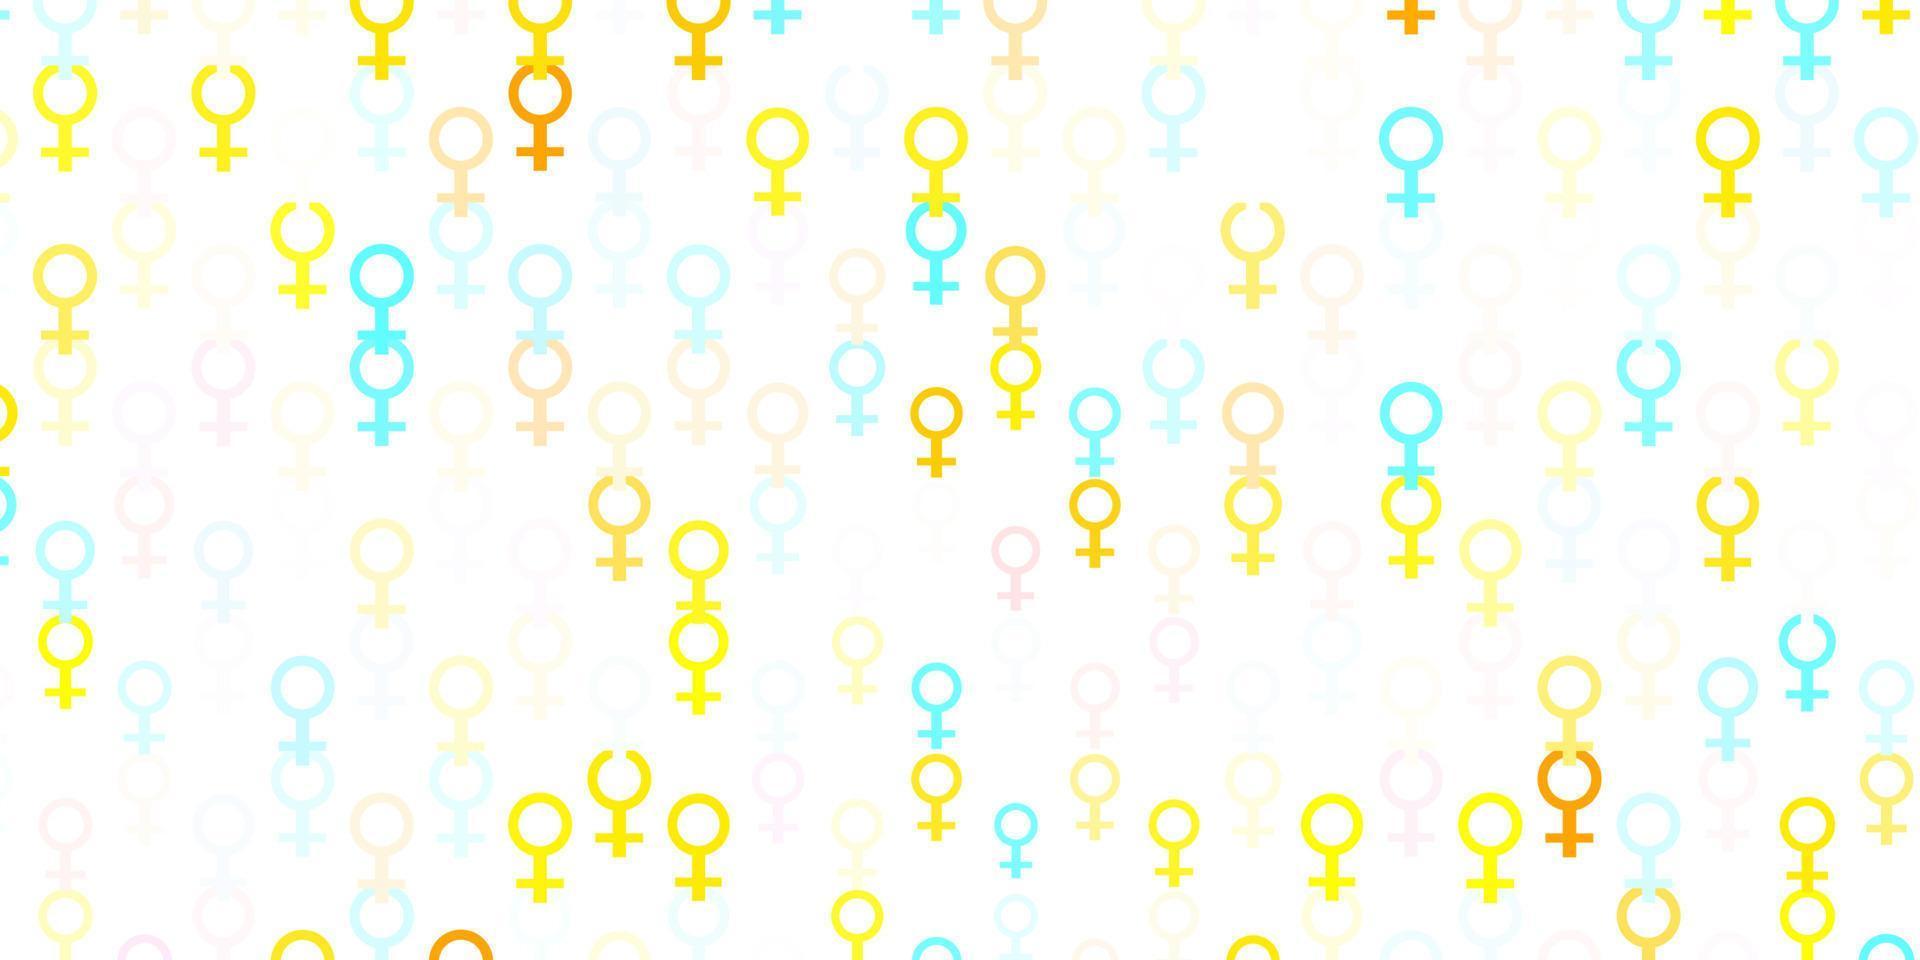 hellblaue, gelbe Vektortextur mit Symbolen für Frauenrechte. vektor